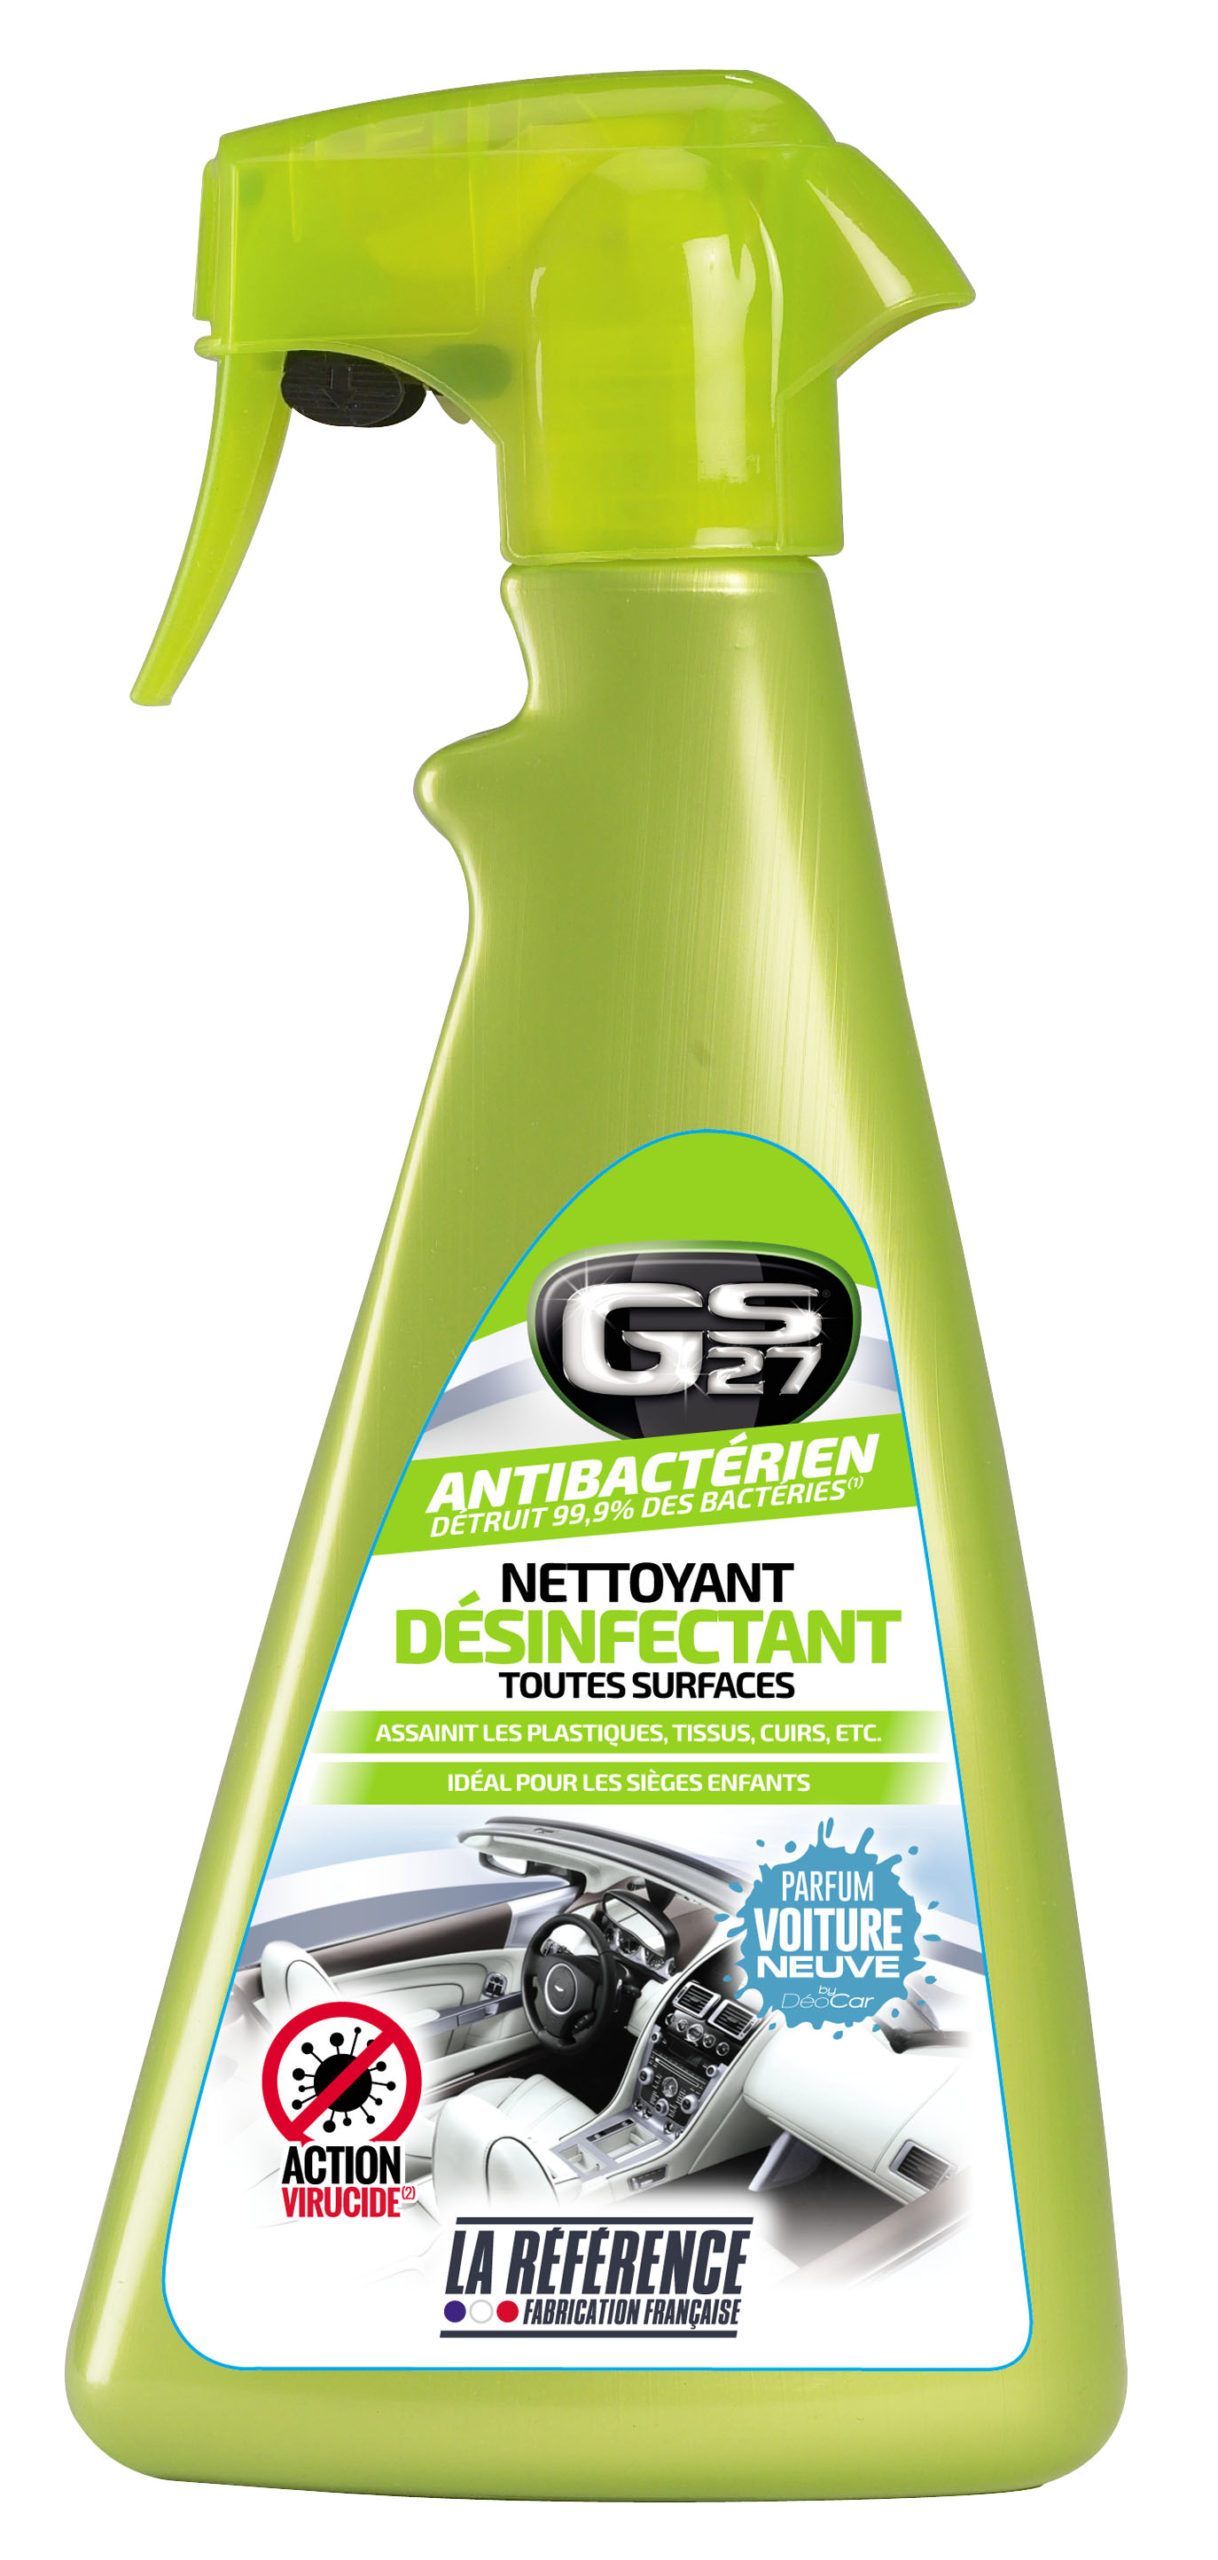 Nettoyant desinfectant ttes surfaces – Etape Auto